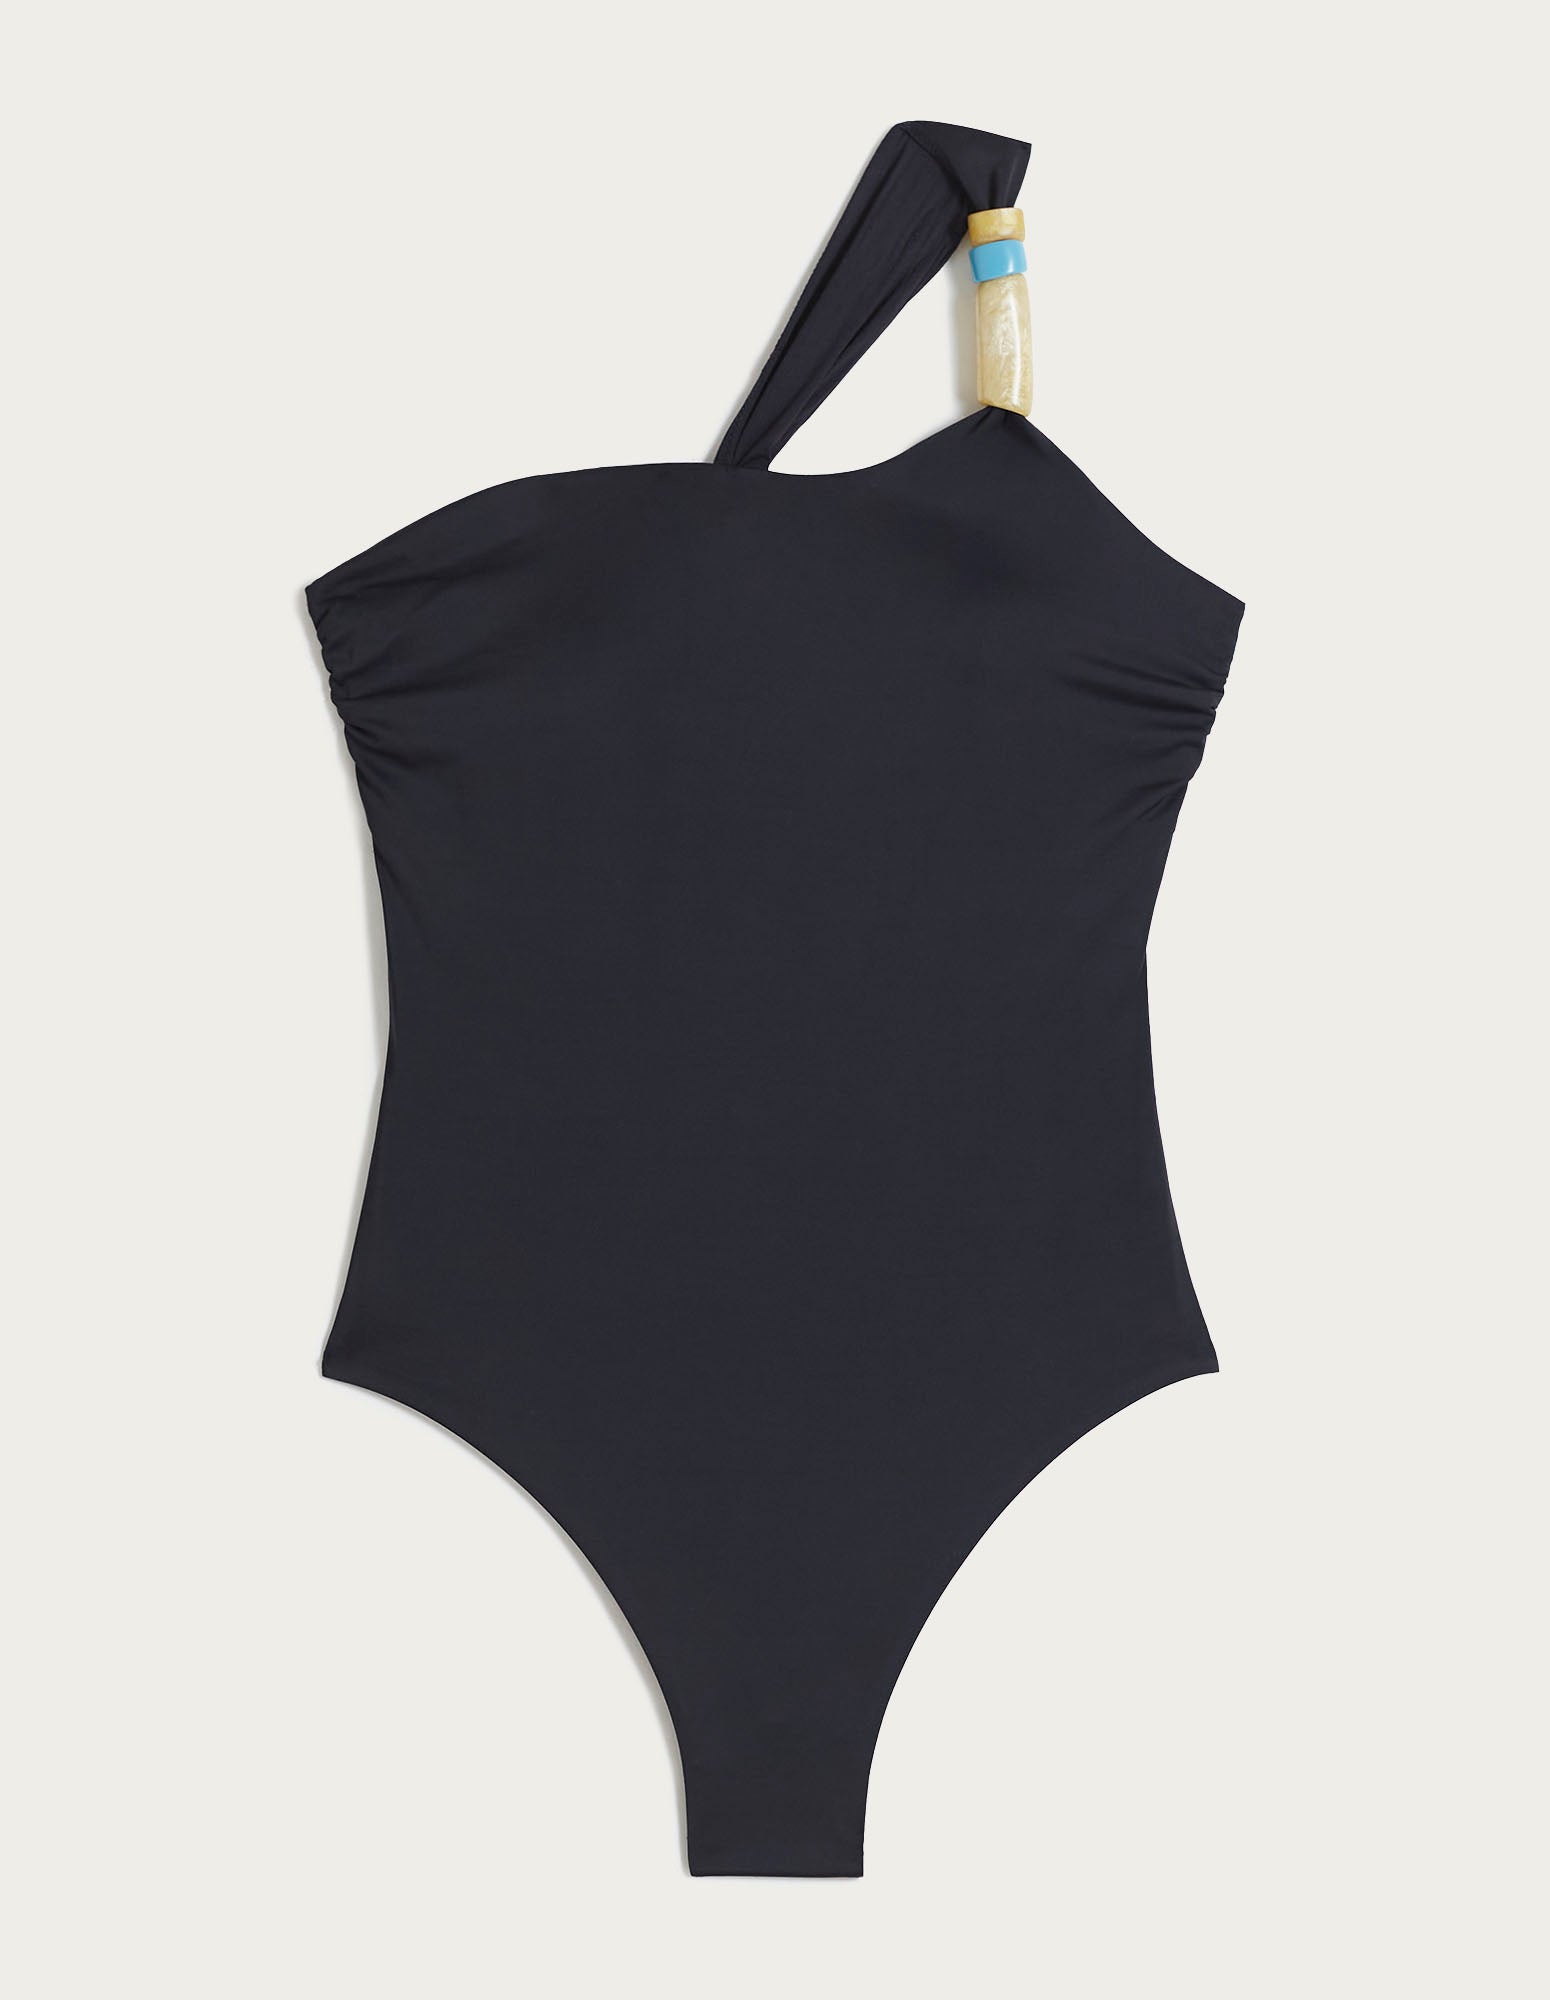 Cappadocia Woman One-Piece Swimsuit